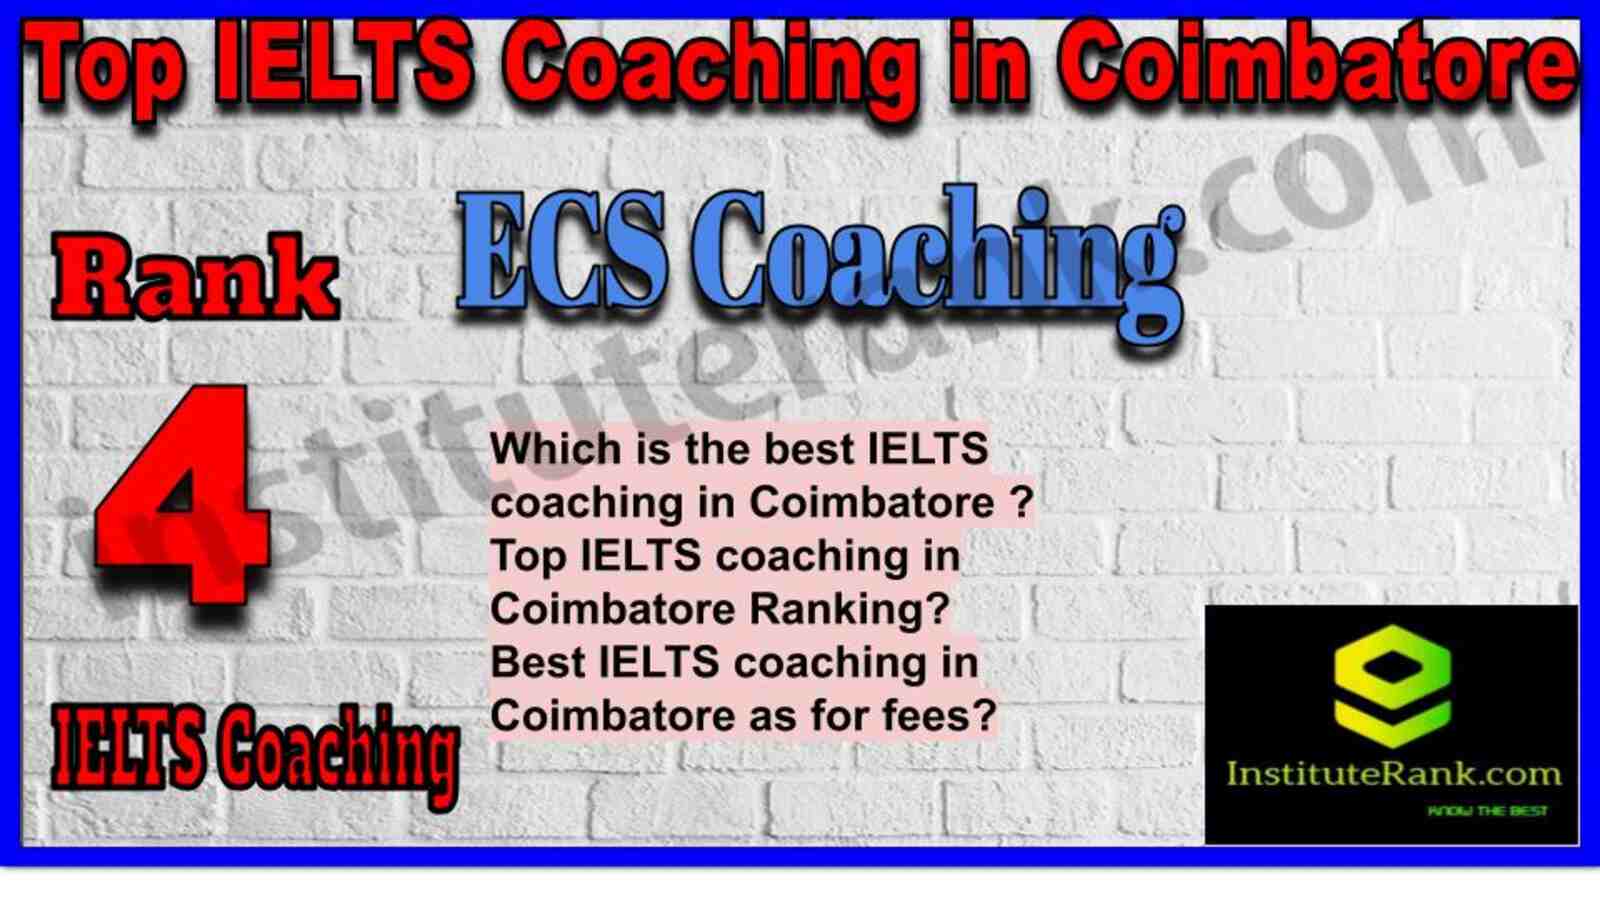 Rank 4. ECS Coaching | Best IELTS Coaching in Coimbatore